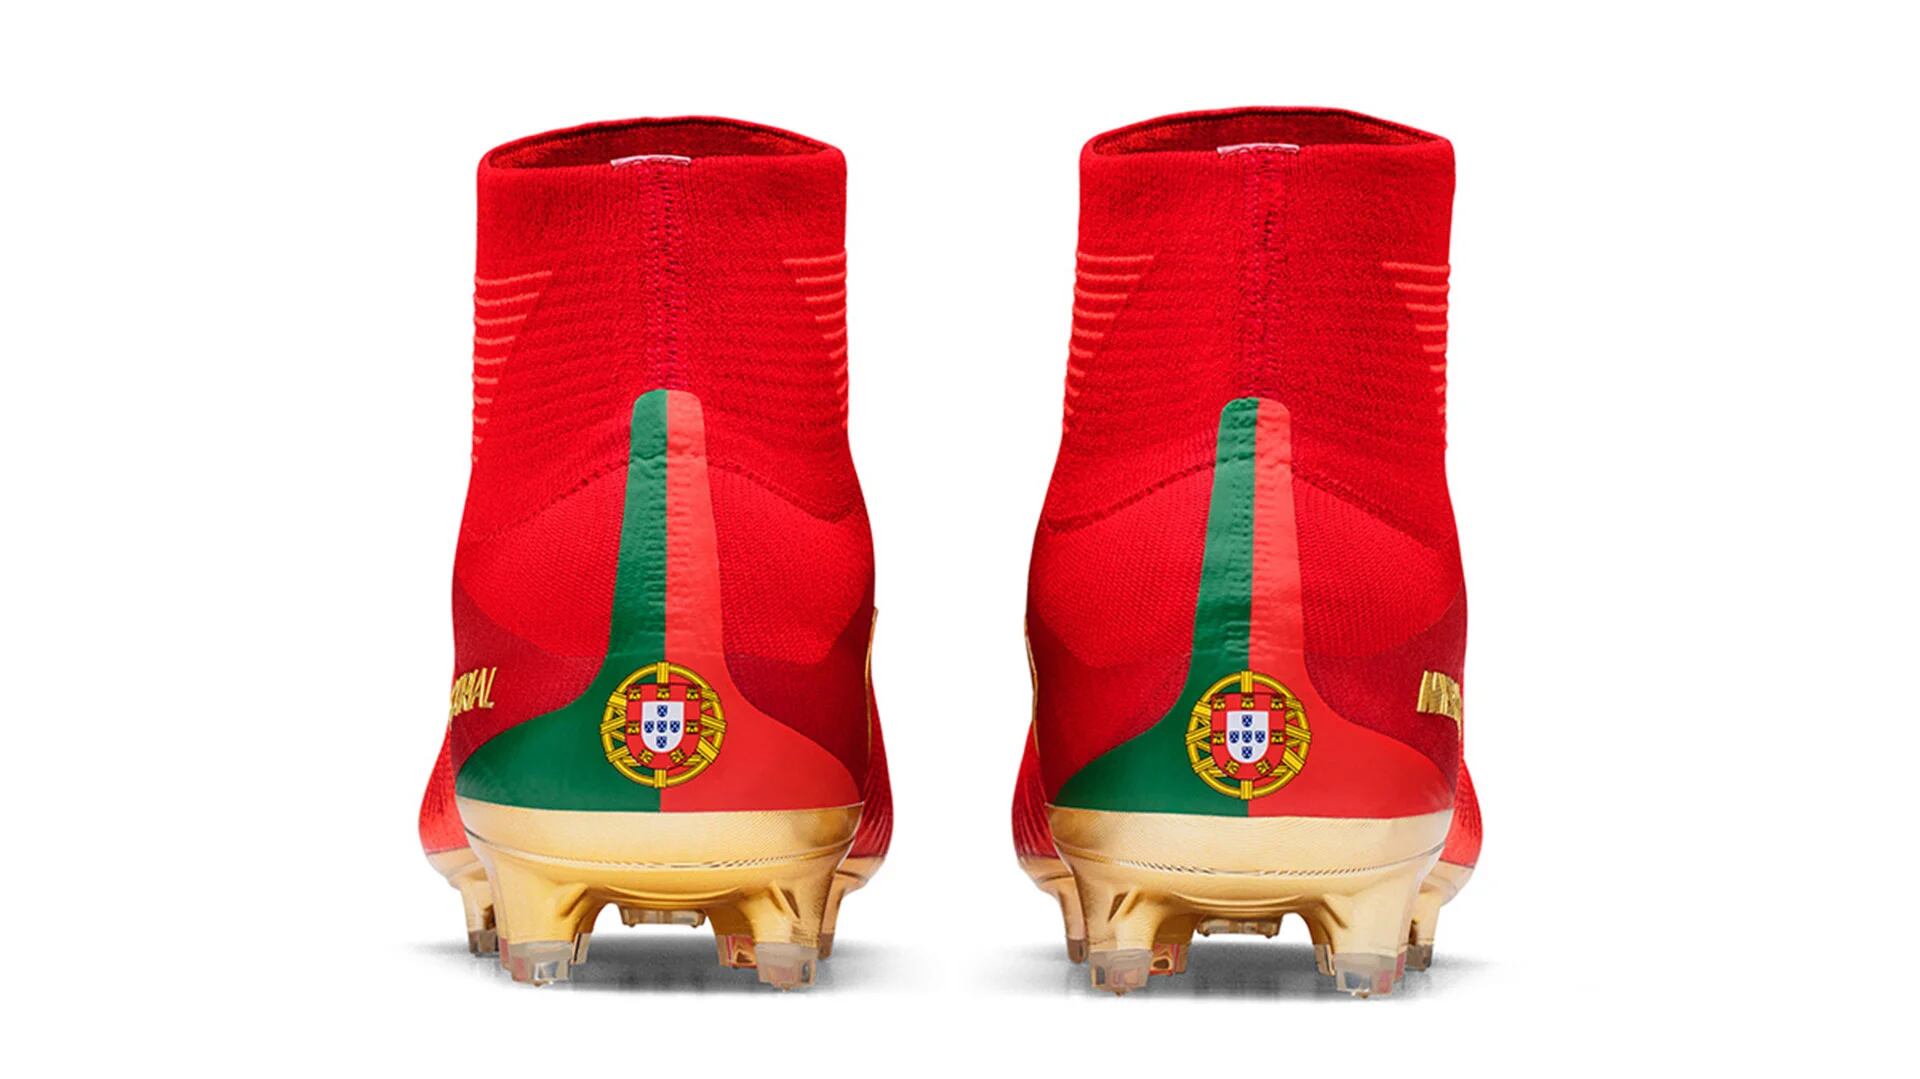 Las fotos los exclusivos botines de Cristiano Ronaldo para la Confederaciones - Infobae